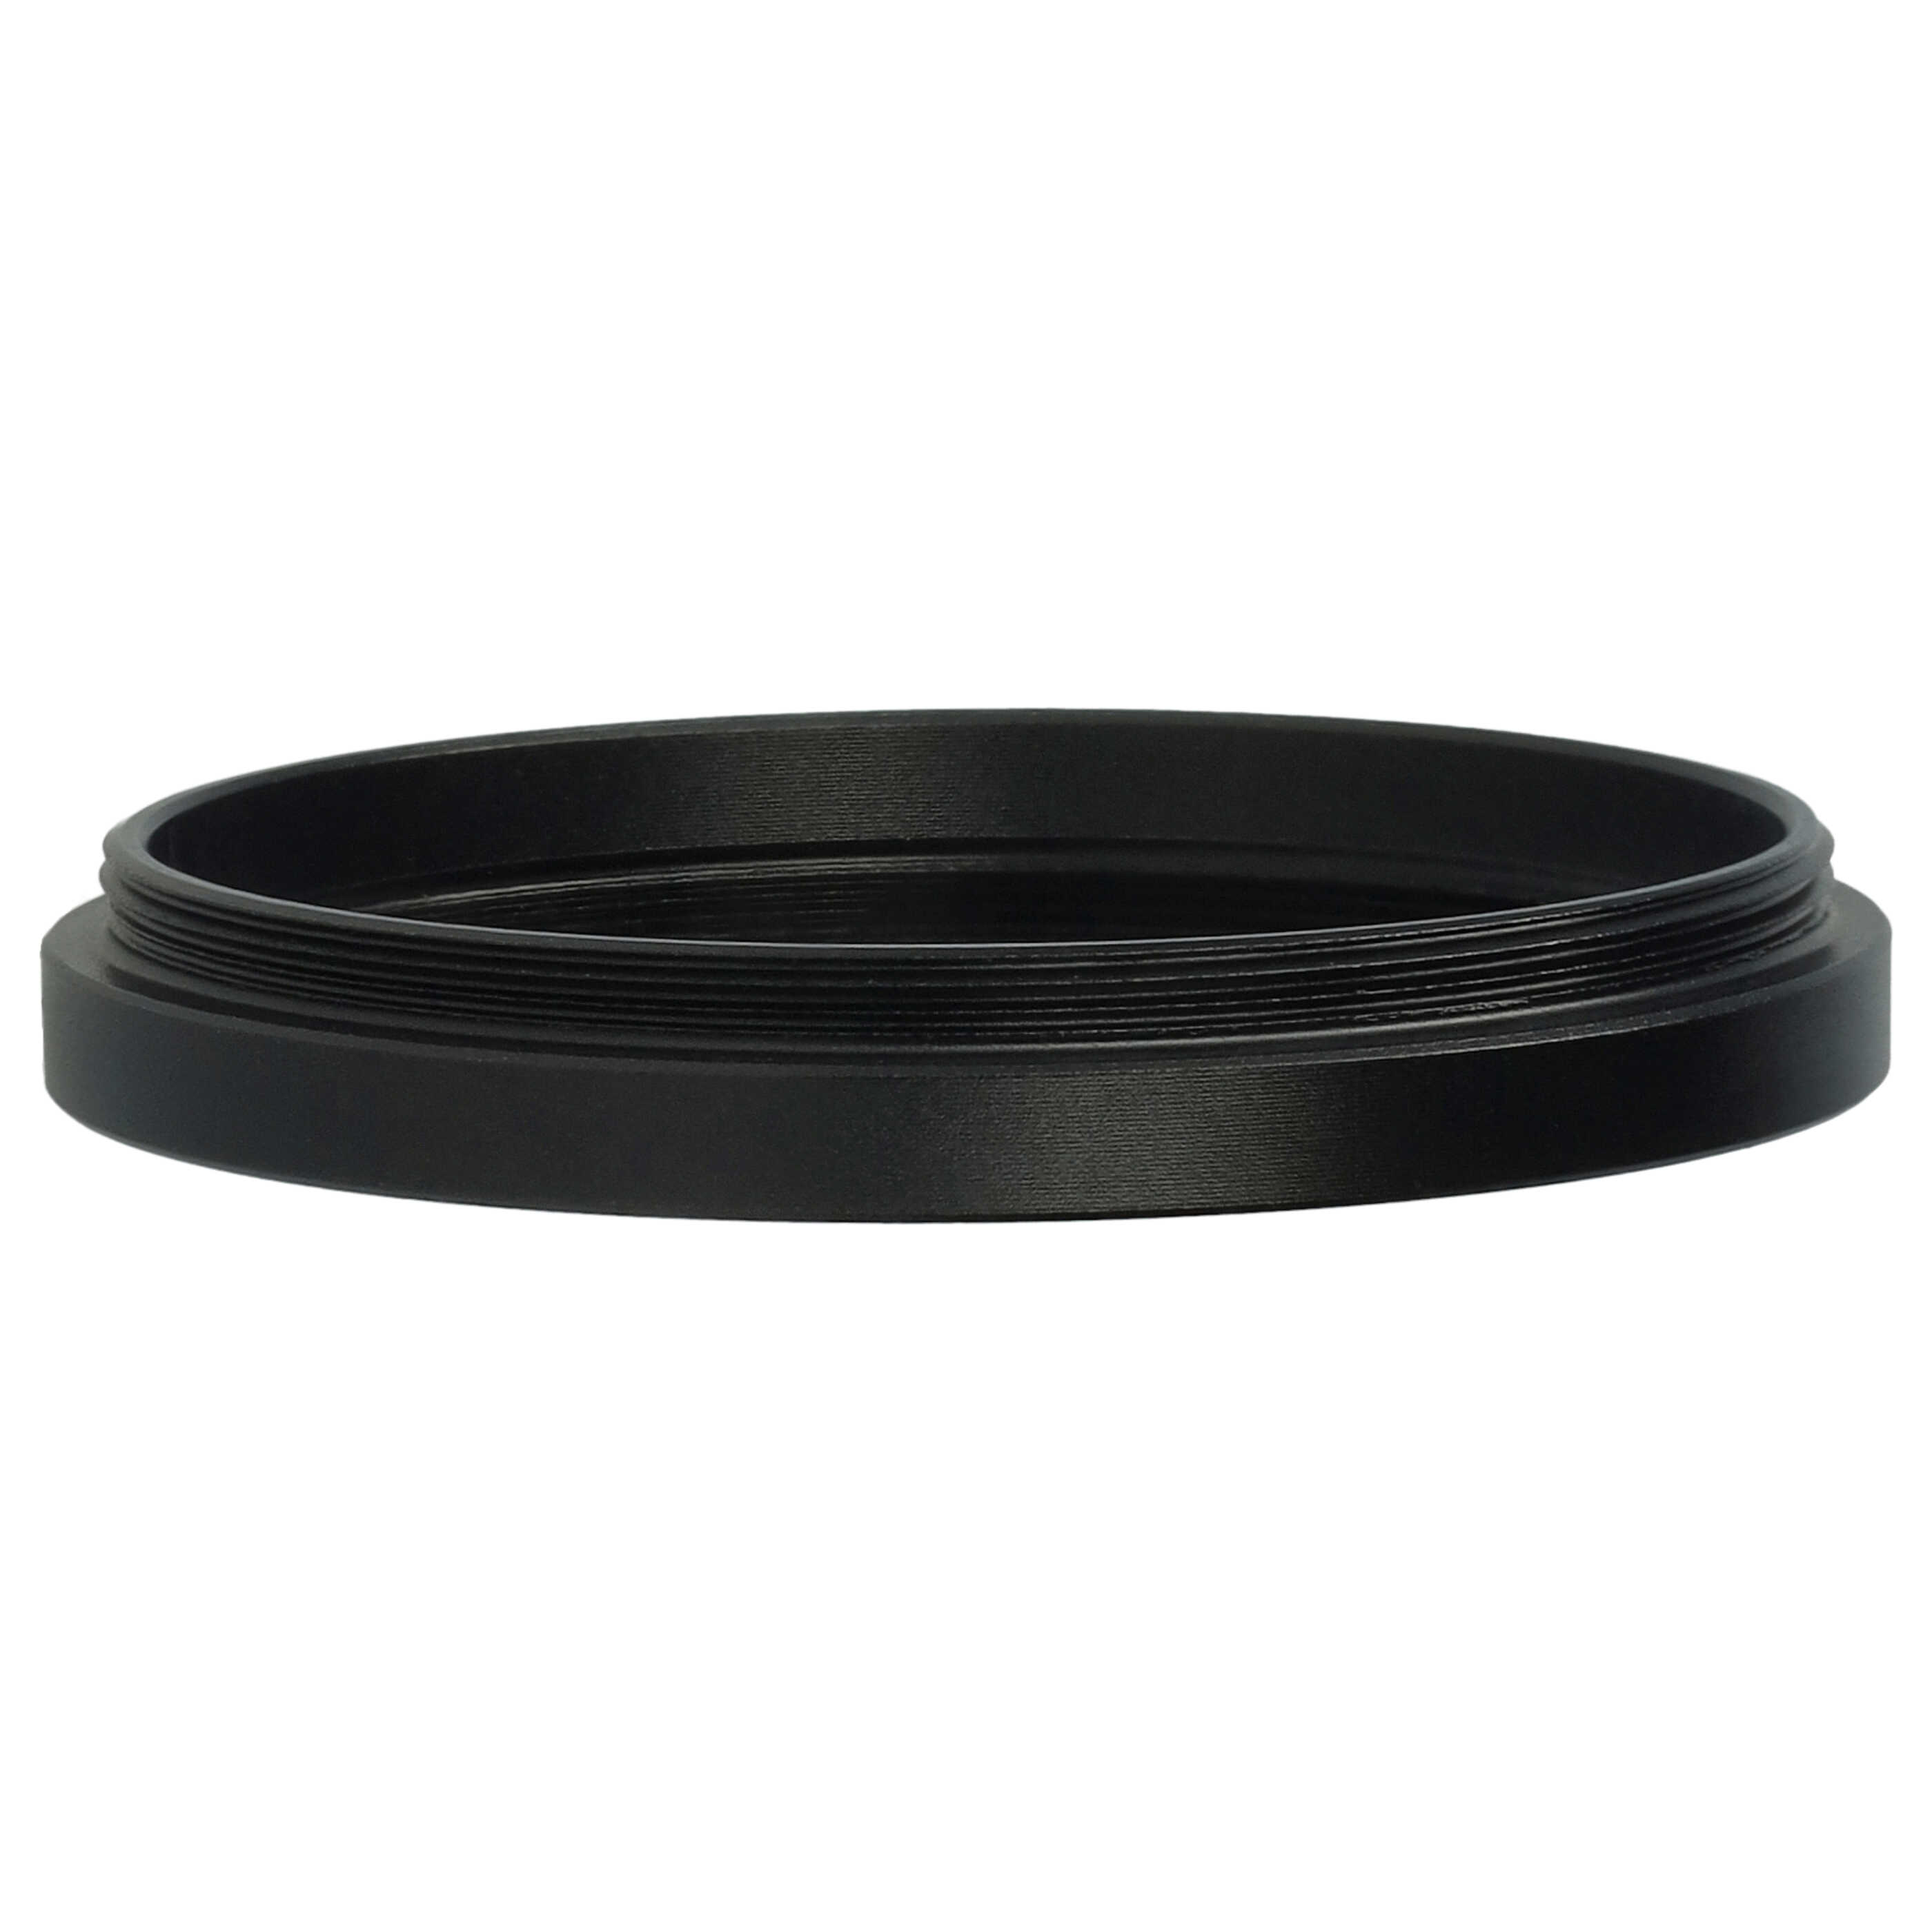 Redukcja filtrowa adapter Step-Down 42 mm - 40,5 mm pasująca do obiektywu - metal, czarny